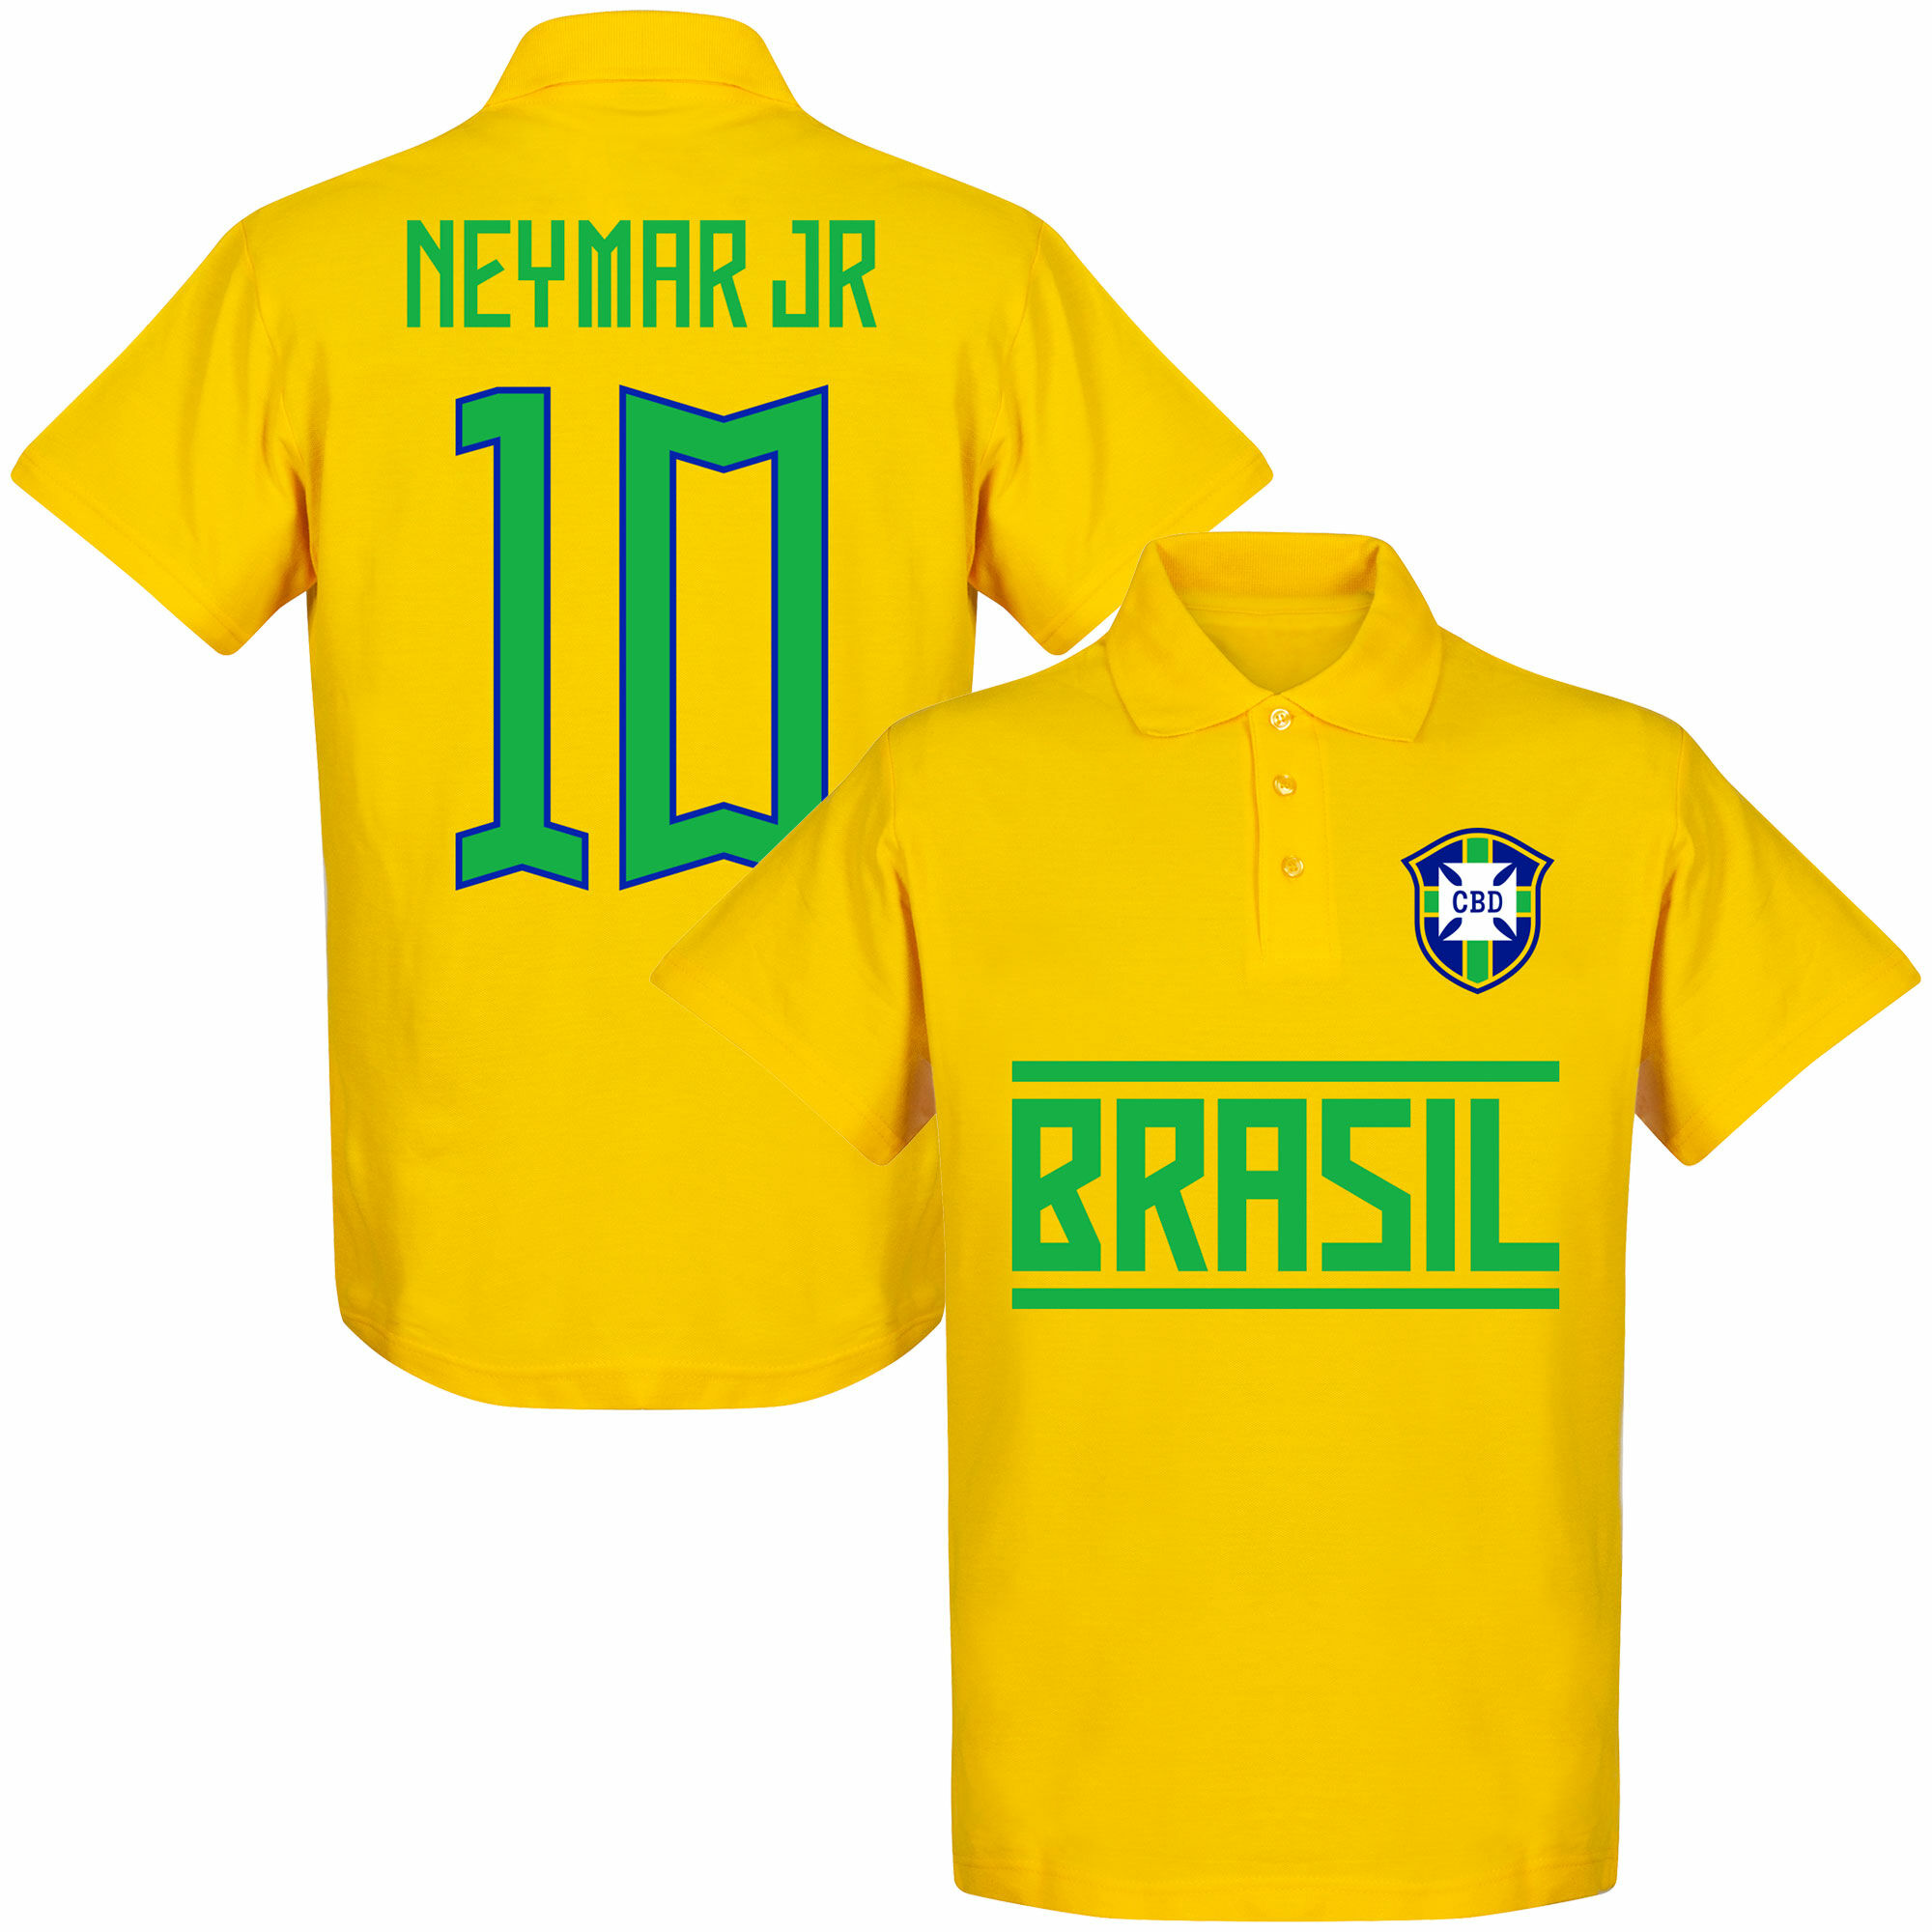 Brazílie - Tričko s límečkem - žluté, číslo 10, Neymar